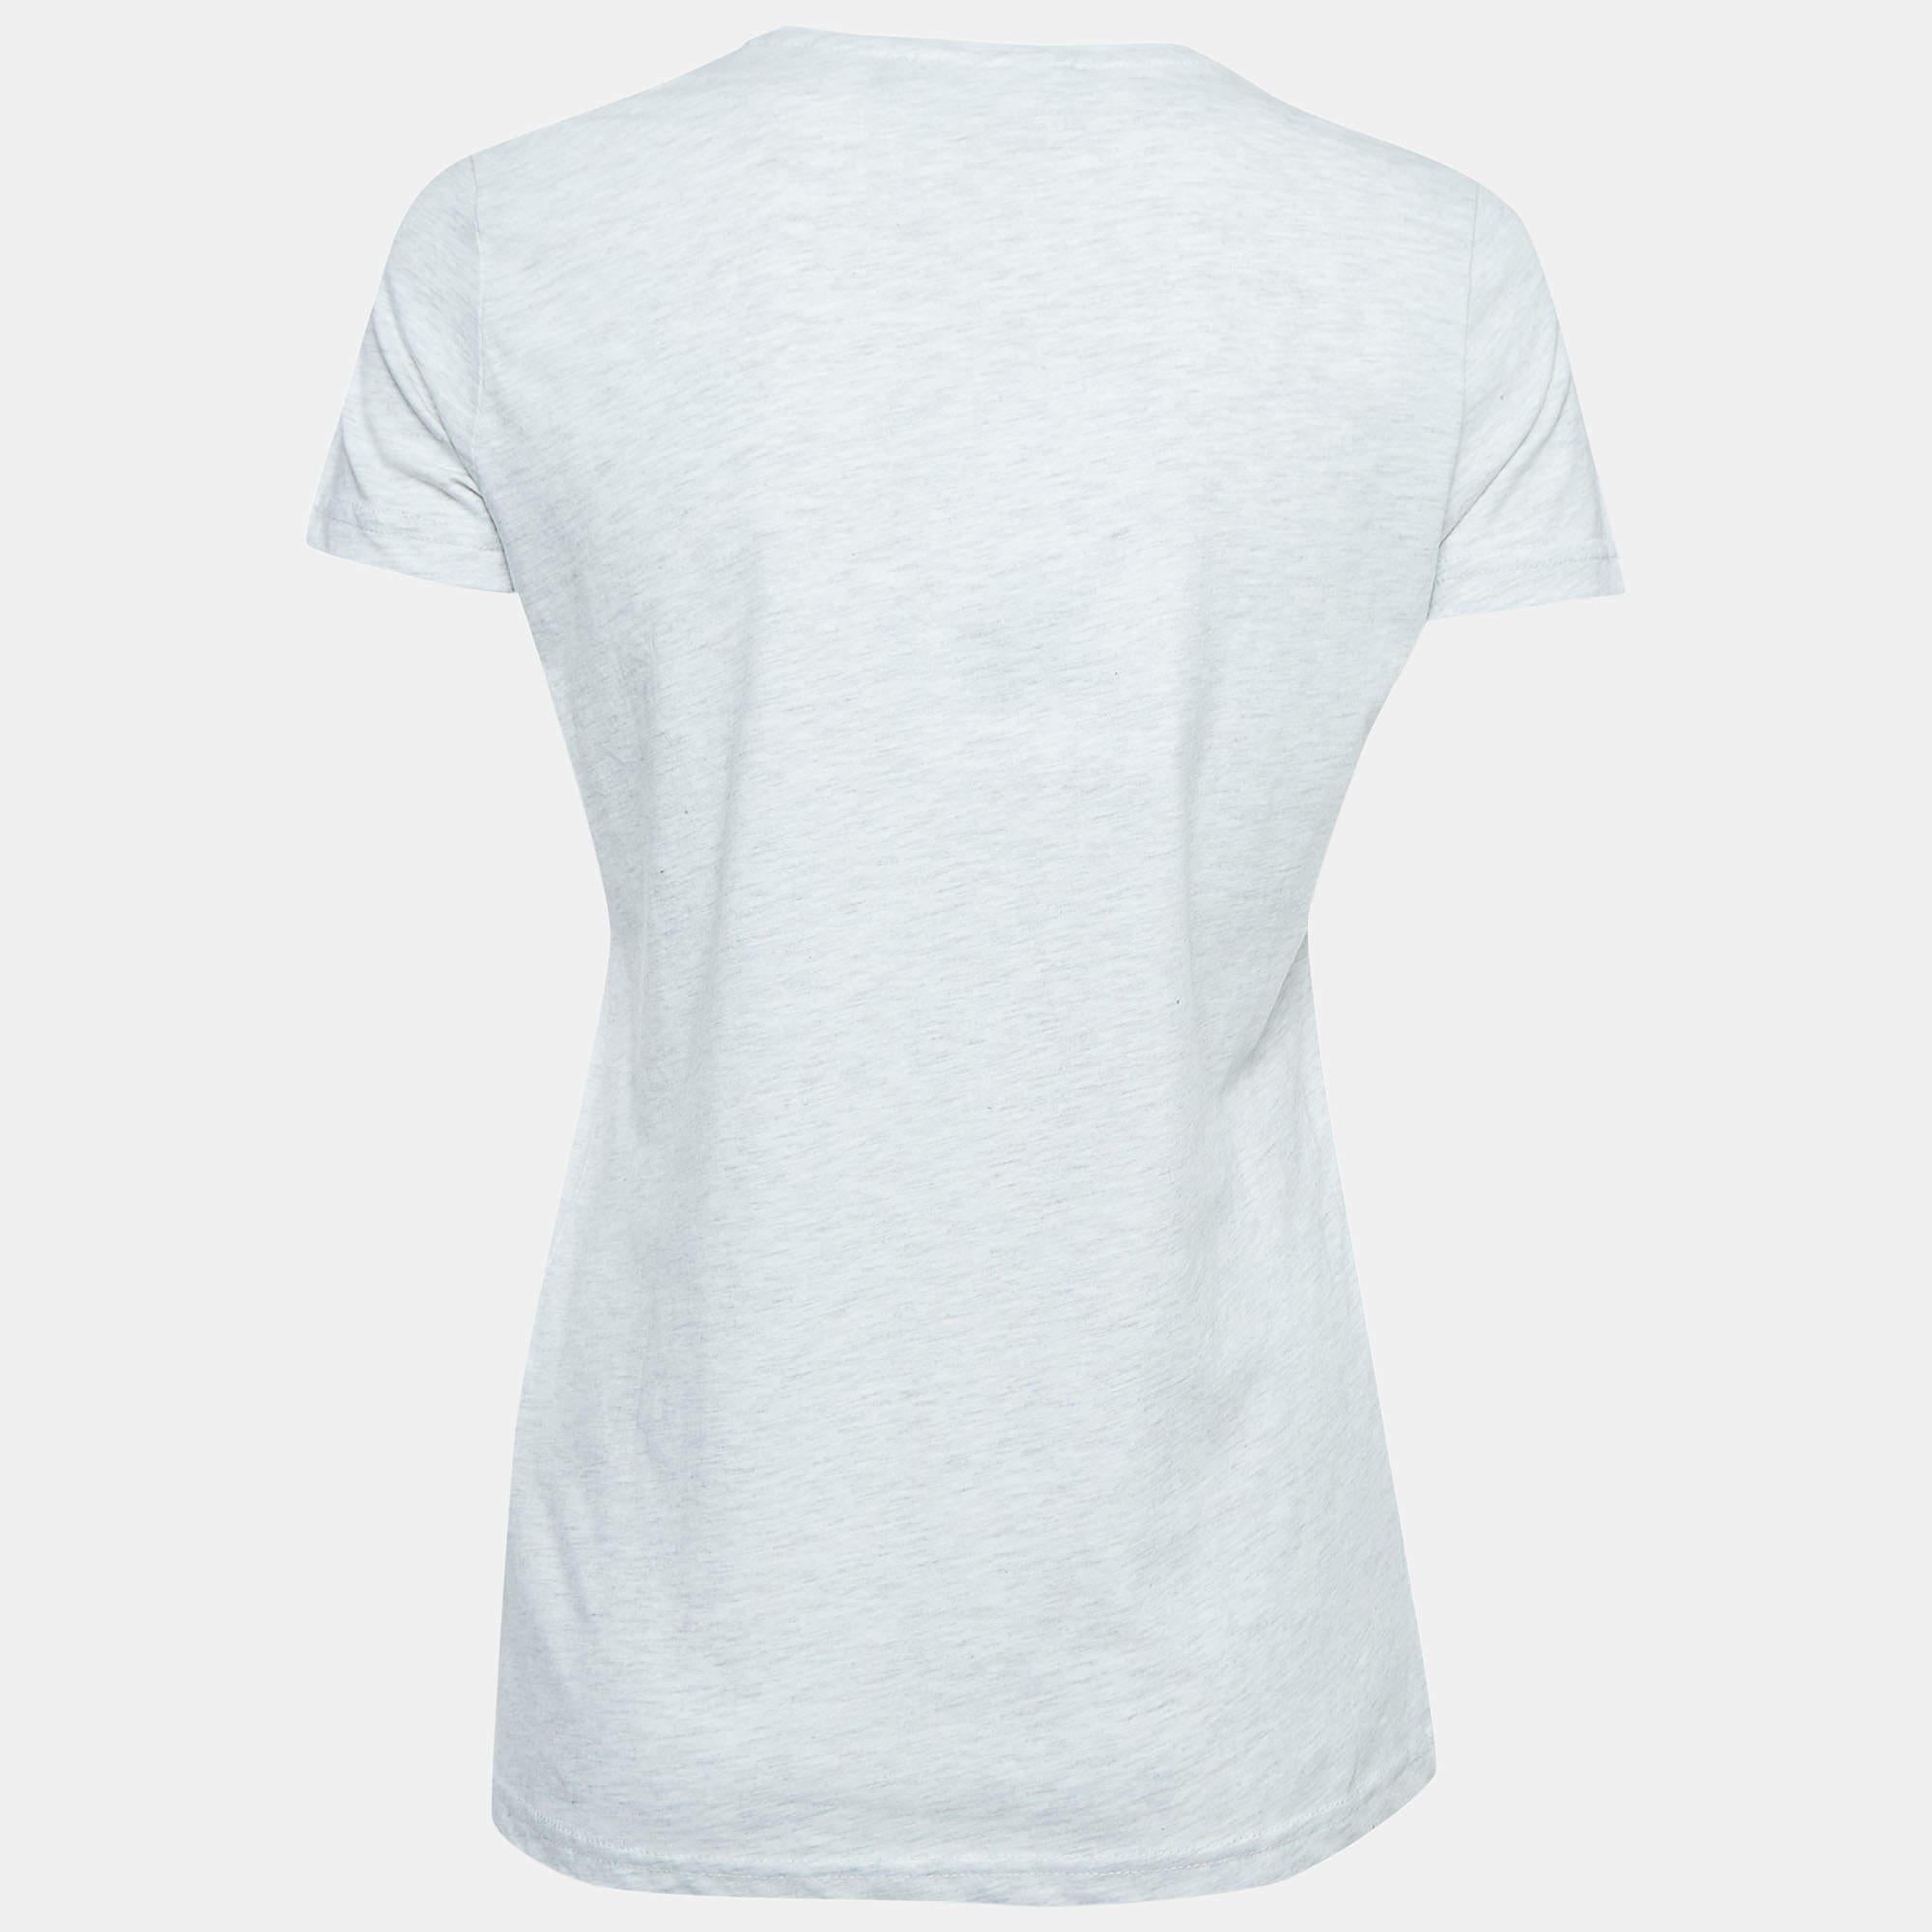 Das Love Moschino-T-Shirt ist der Inbegriff lässiger Eleganz. Sie ist aus hochwertiger Baumwolle gefertigt und in einem schlichten Grauton mit dem kultigen Logoprint der Marke verziert. Sie bietet eine Mischung aus Komfort, Stil und